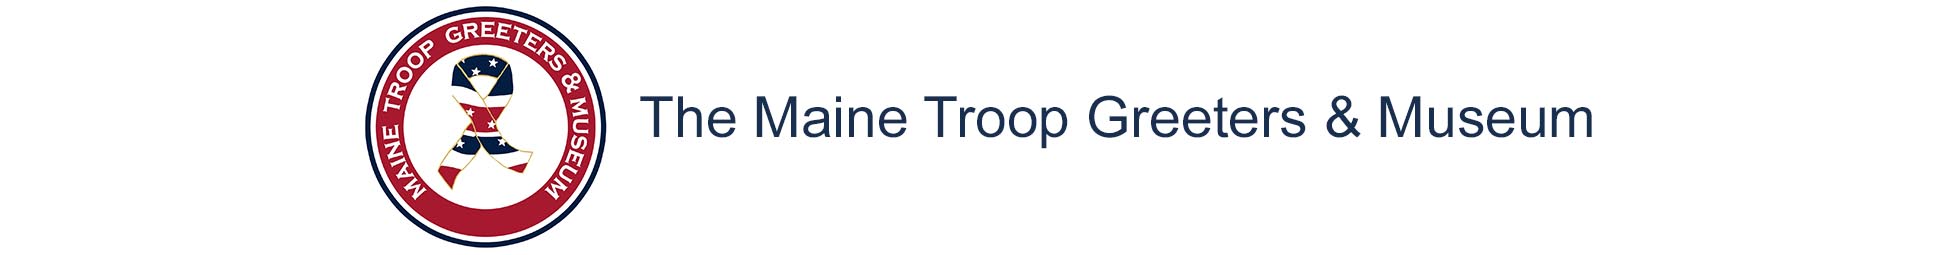 The Maine Troop Greeters